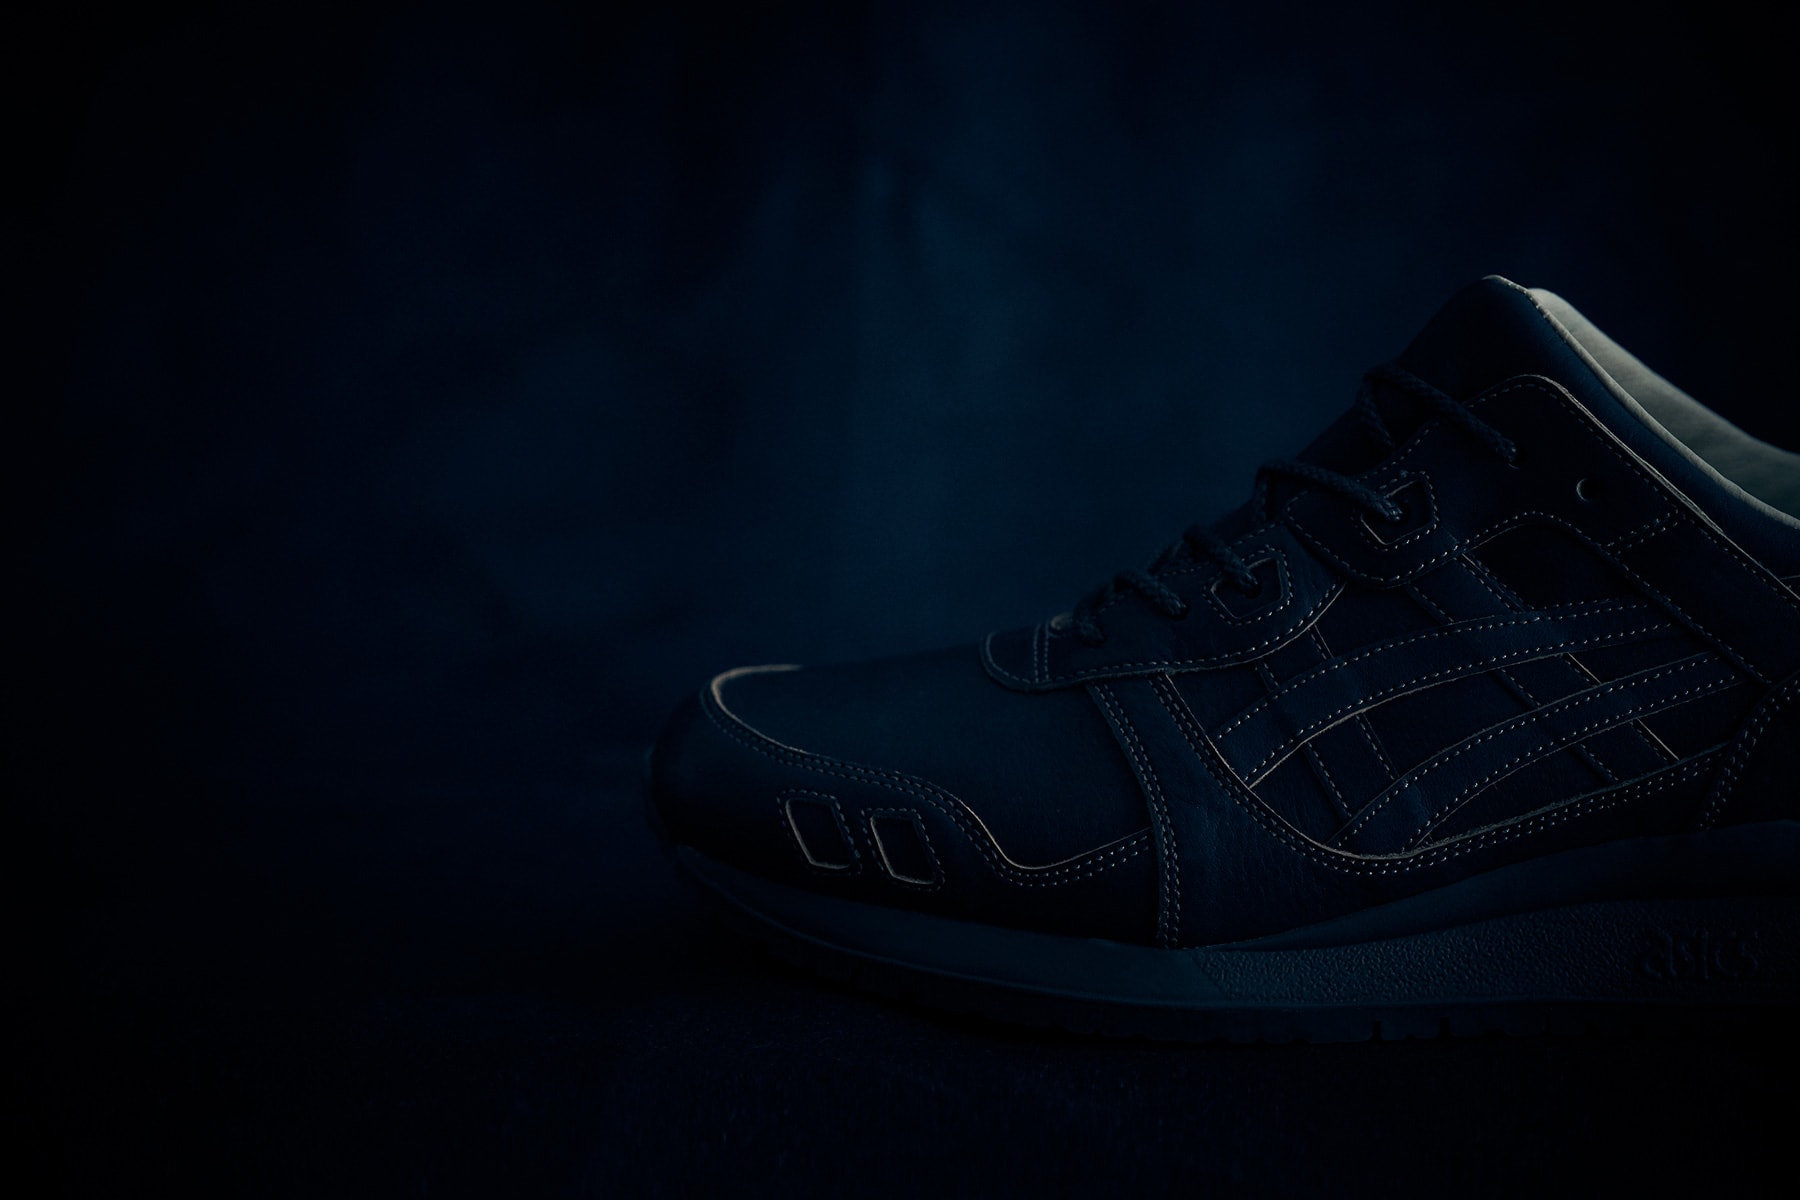 ASICS TIGER Made in Japan GEL Lyte III Indigo handmade 2017 December 9 Dark Light Shoe Sneaker Release Date Drop Info blue dye 